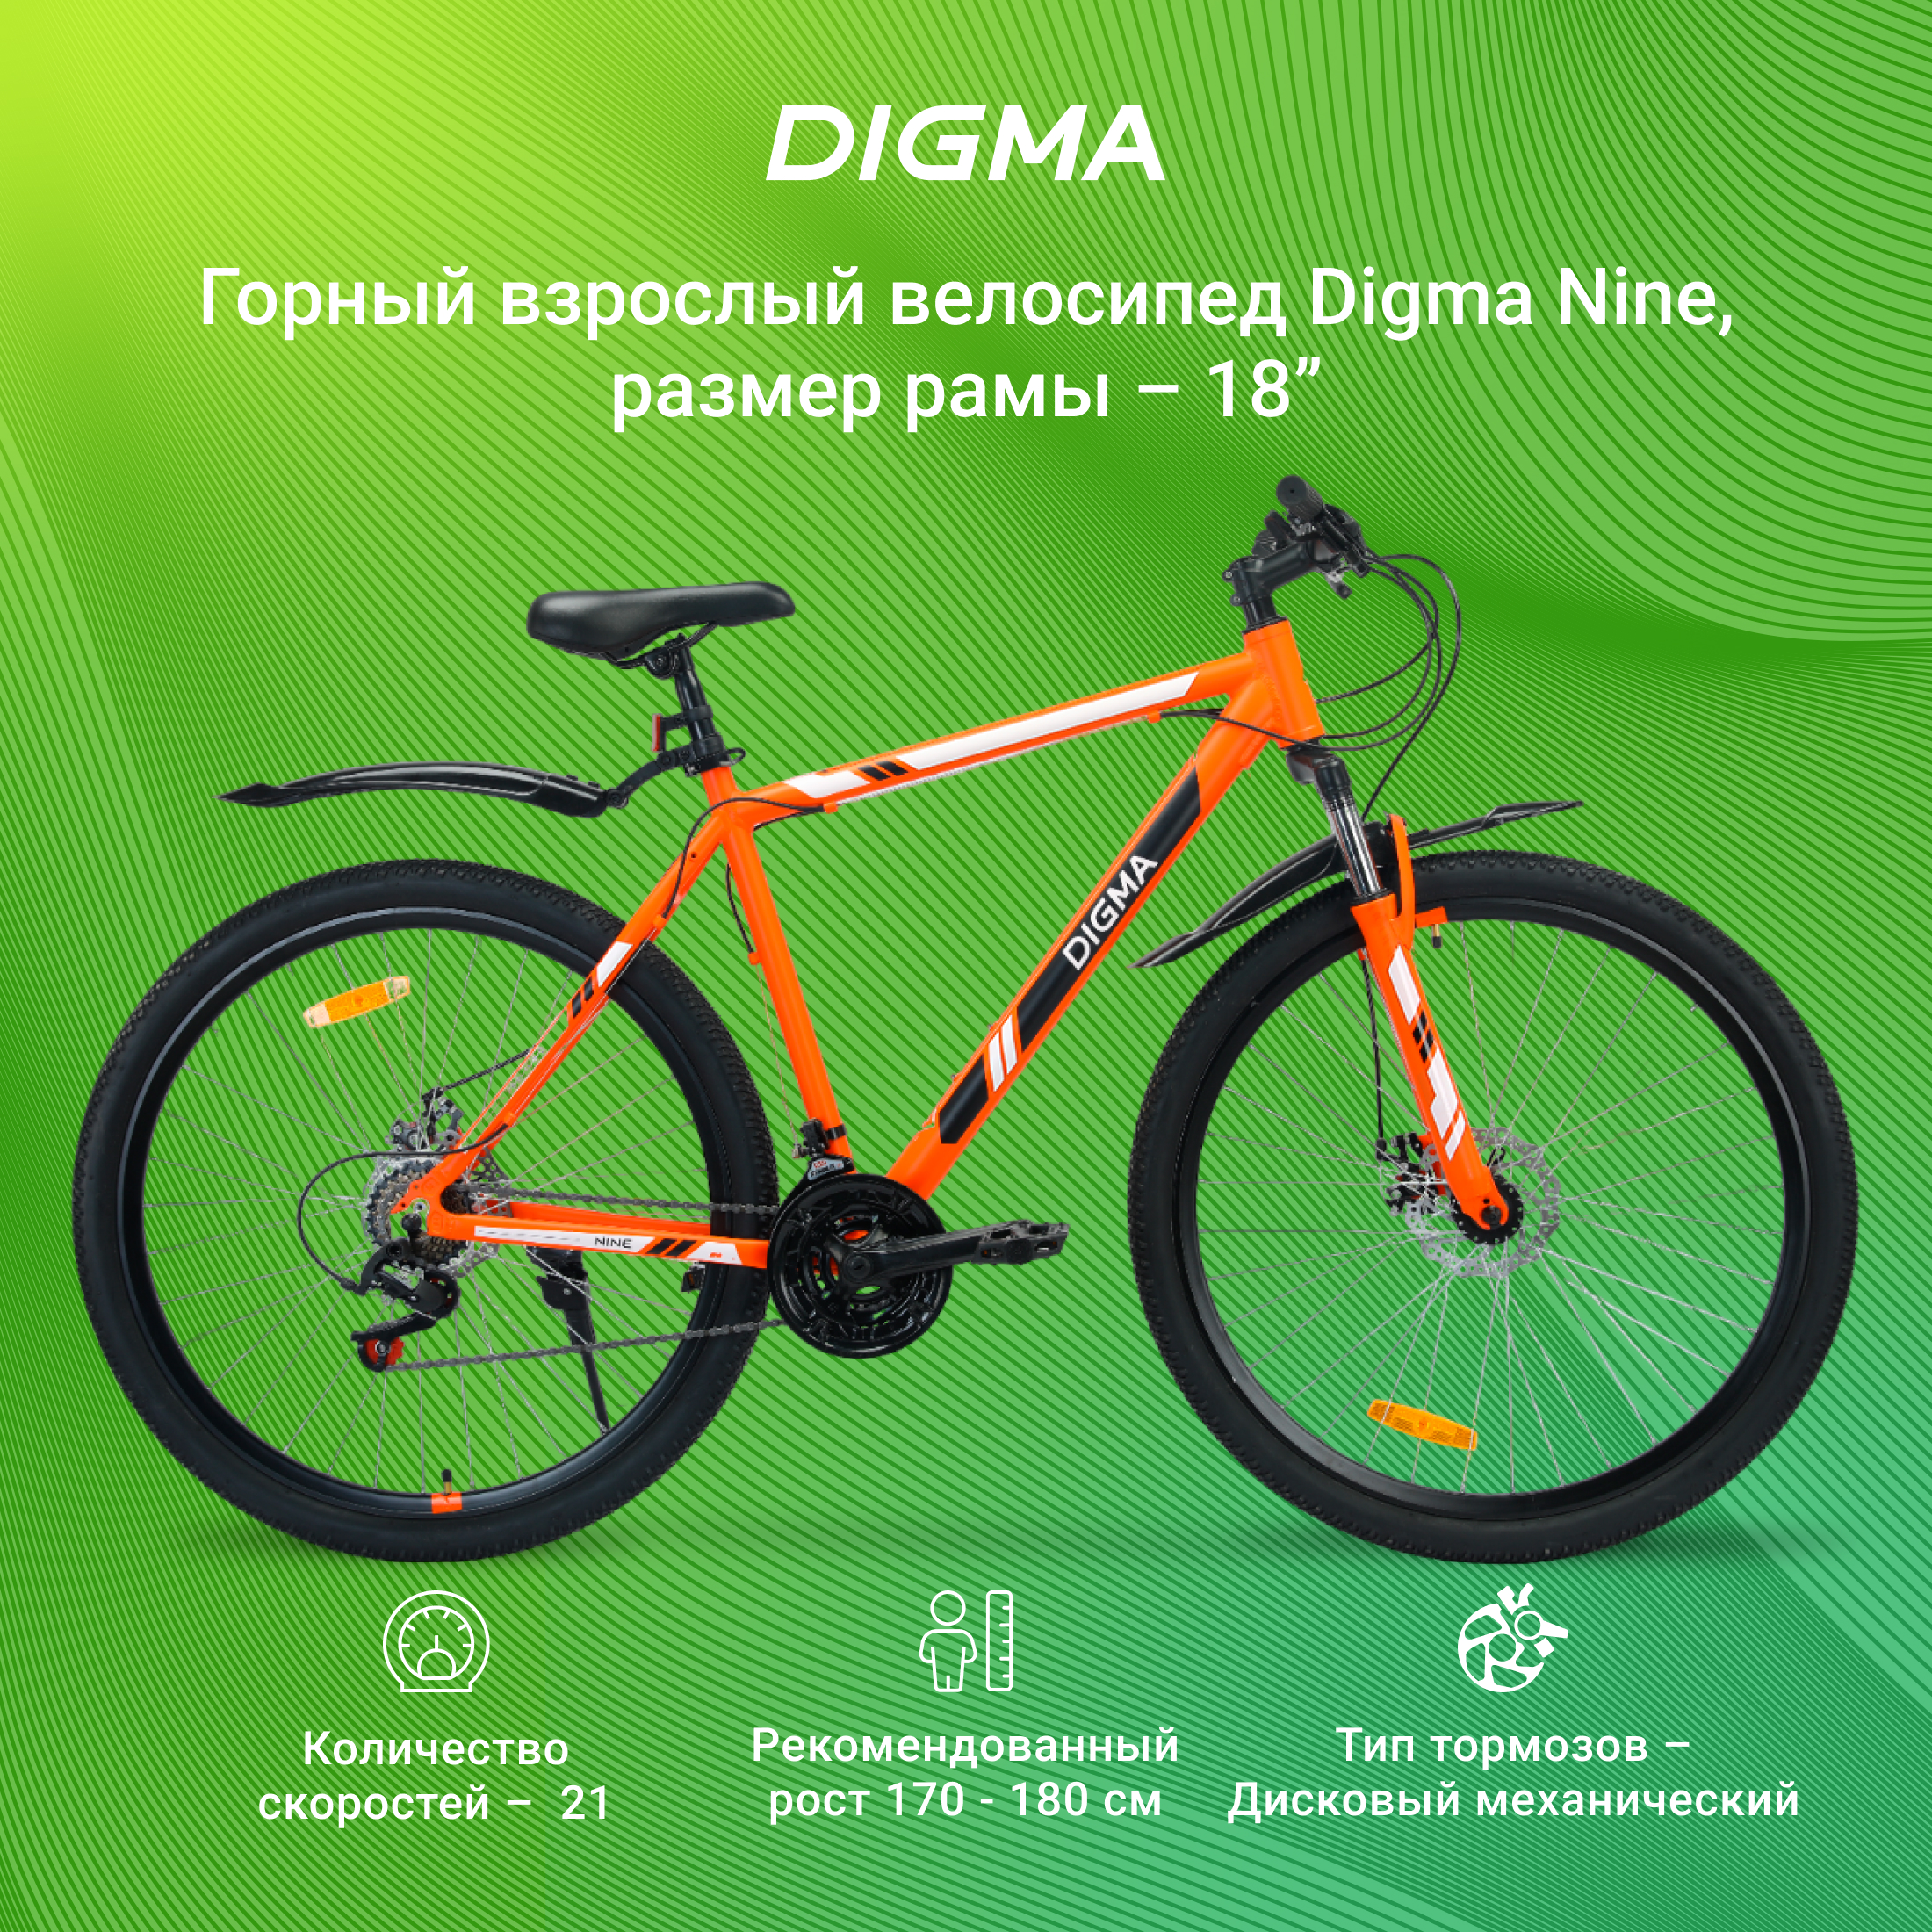 Велосипед Digma Nine оранжевый - фото 1